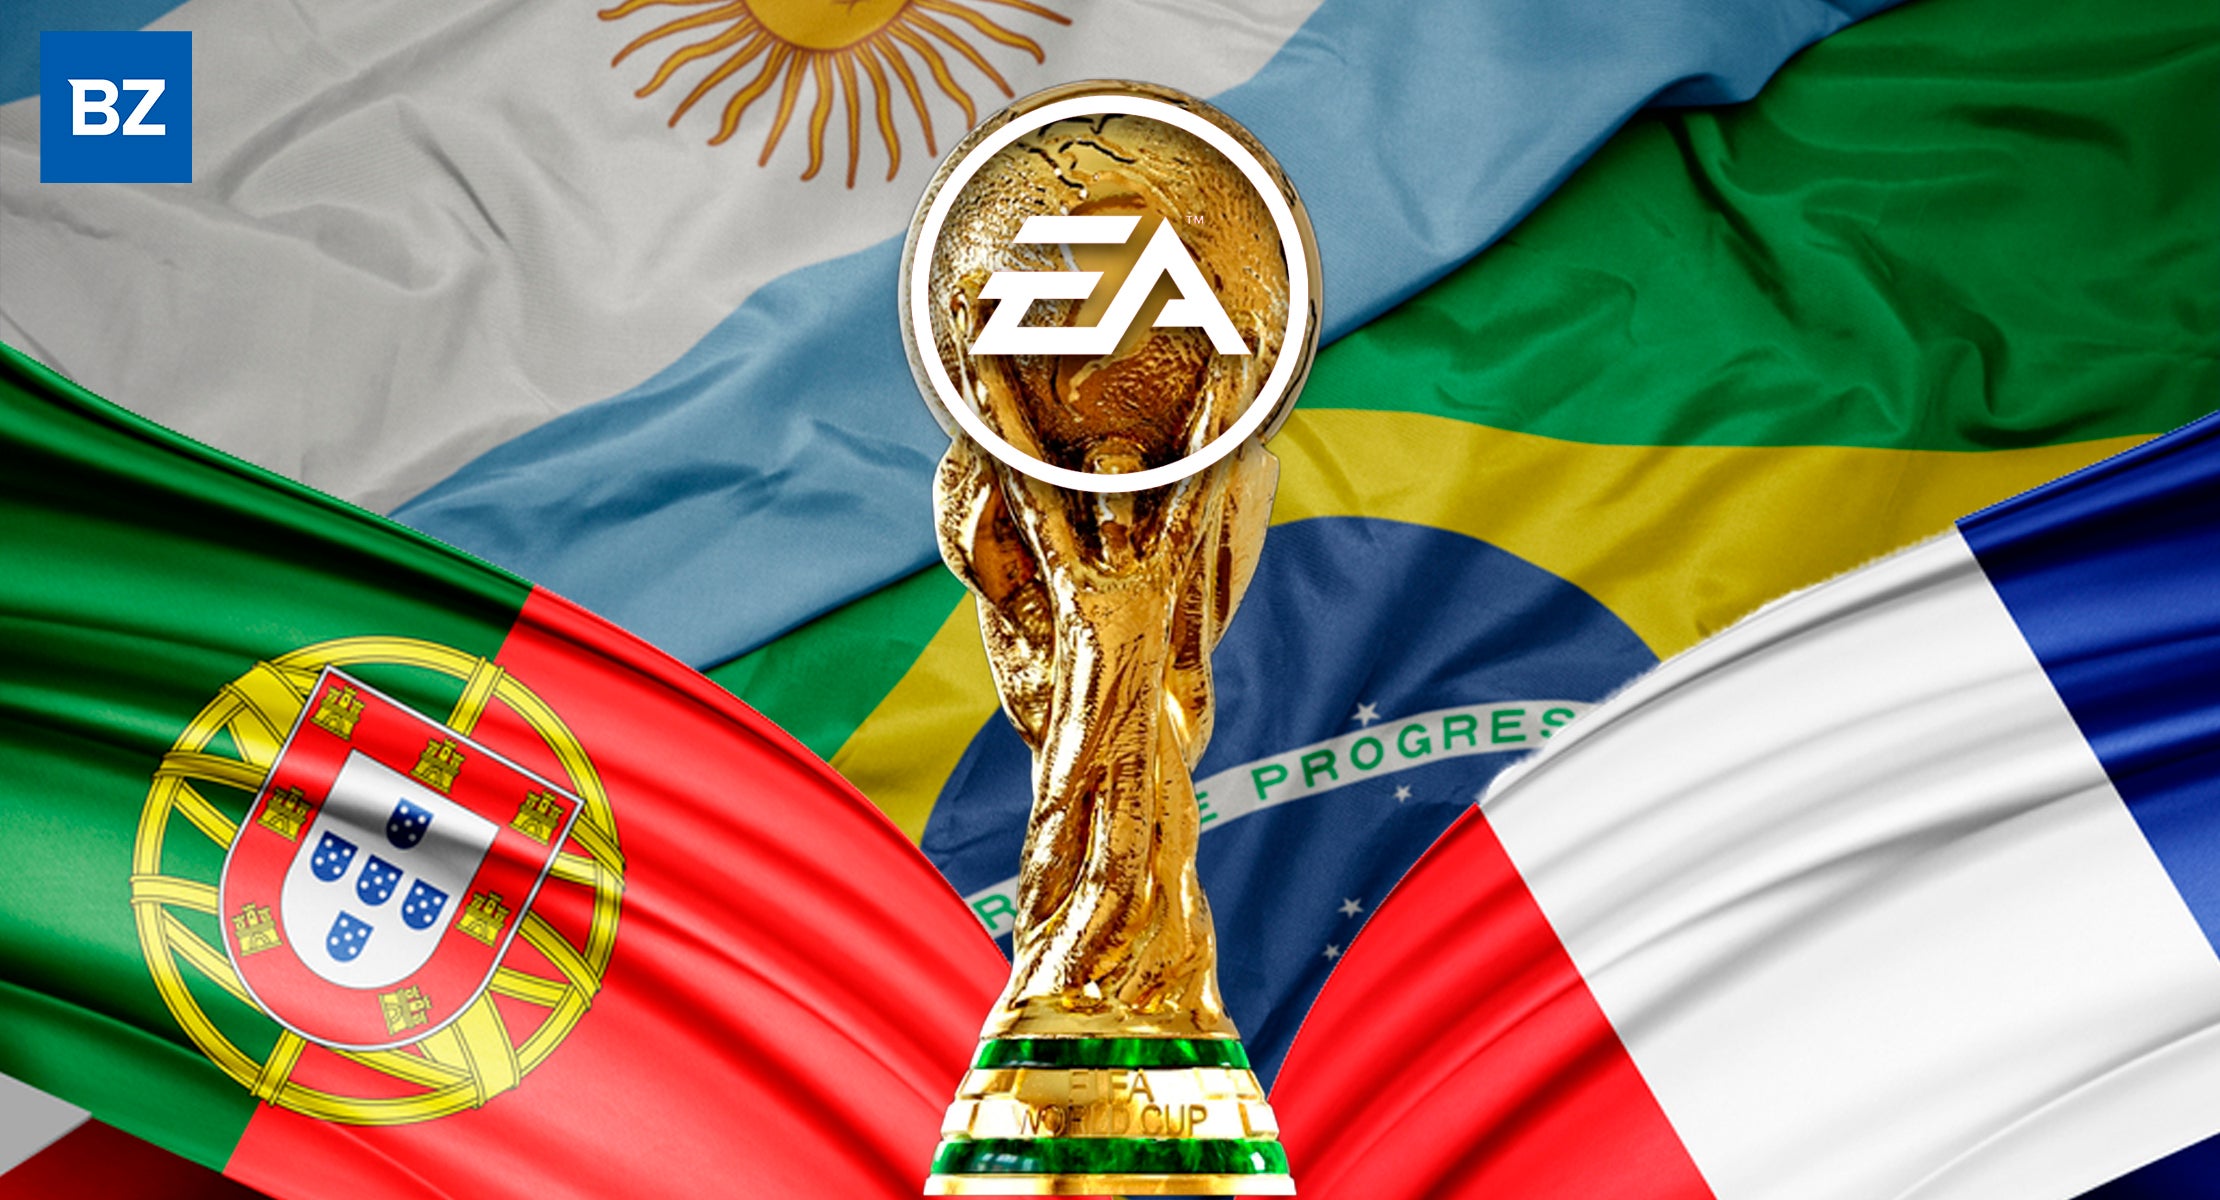 FIFA 23 - SIMULEI A COPA DO MUNDO QATAR 2022 COM UMA FINAL